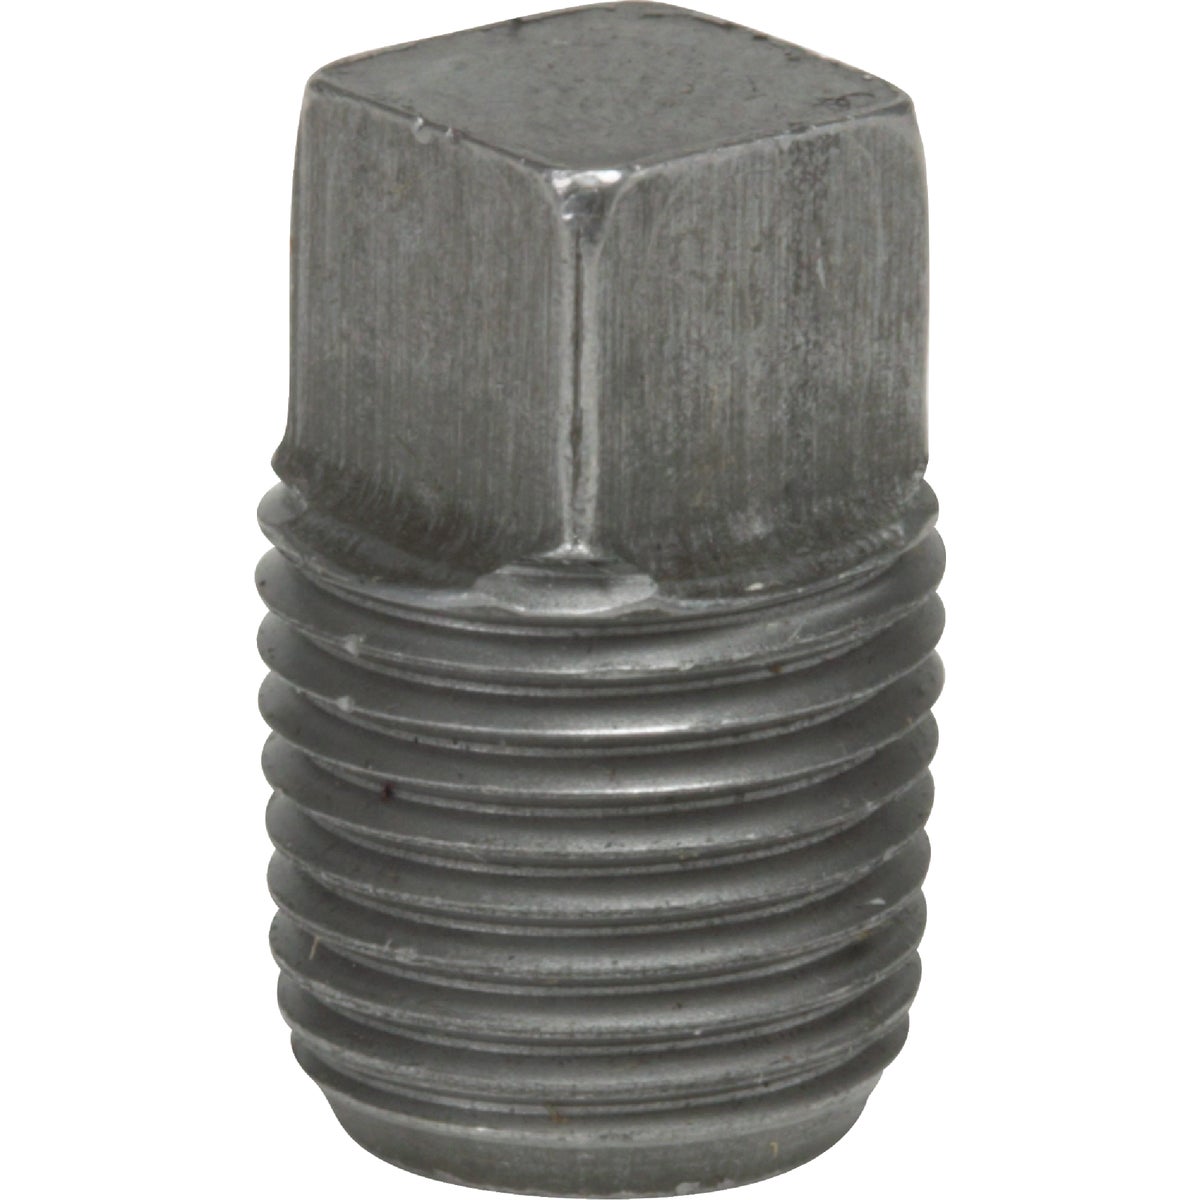 Anvil 1/4 In. Malleable Black Iron Square Head Pipe Plug